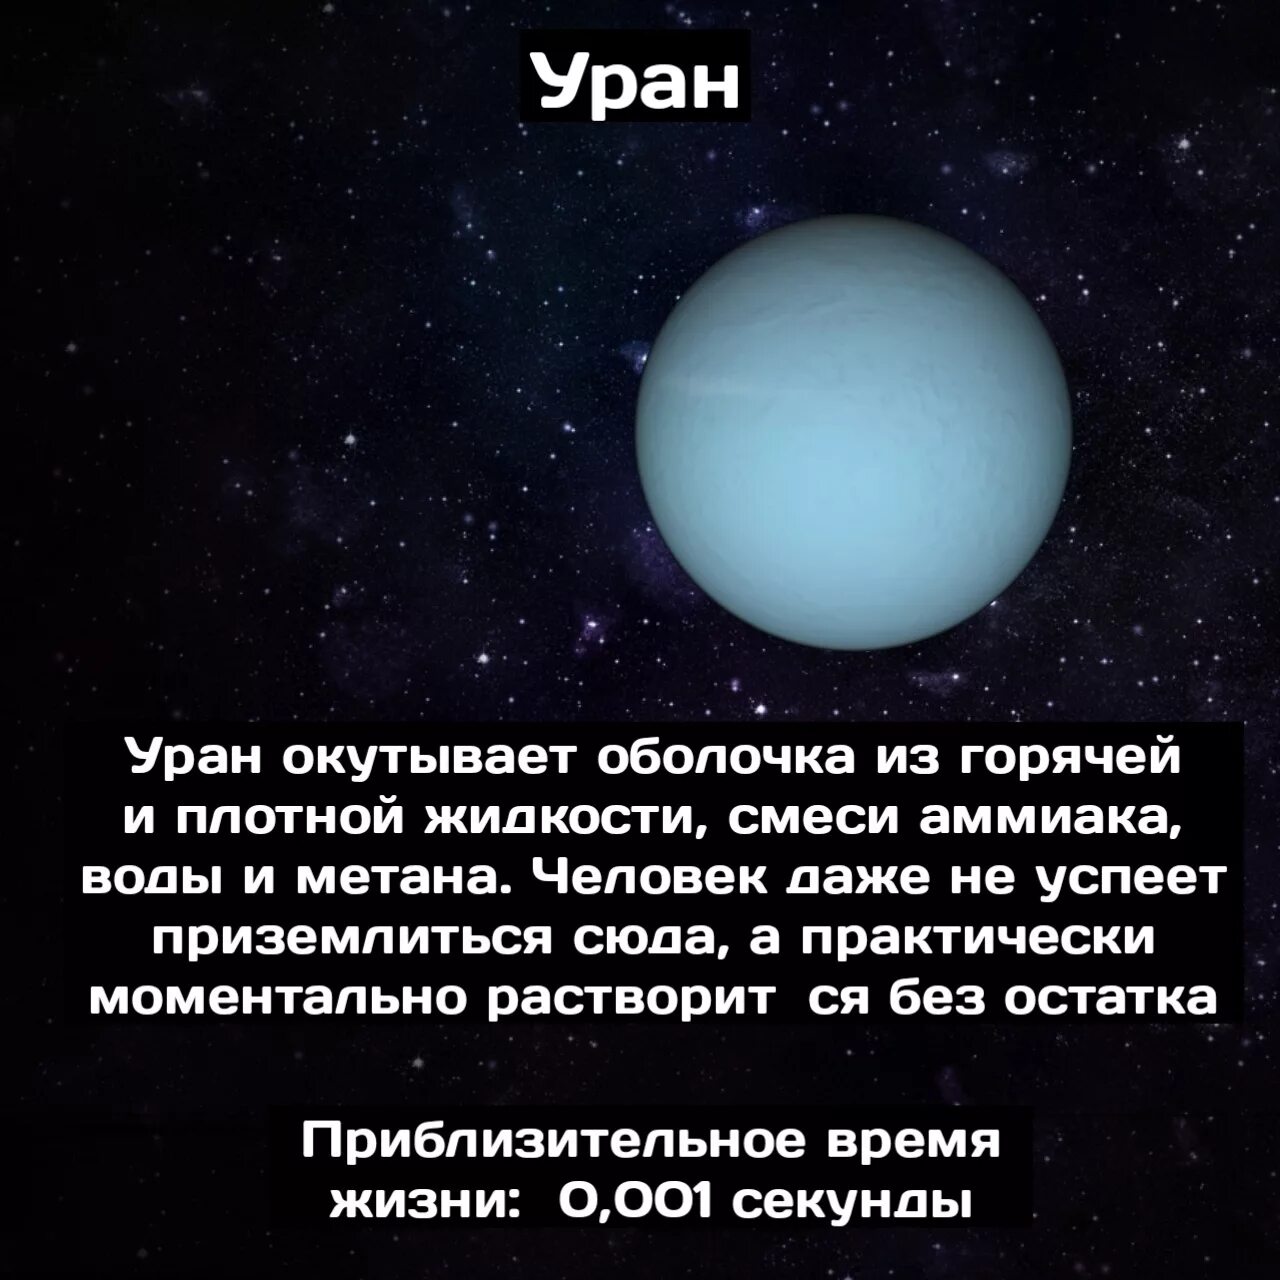 Каким будет вес предмета на уране. Возможна ли жизнь на Уране. Человек на Уране. На Уране есть Уран. Шутки про Уран.